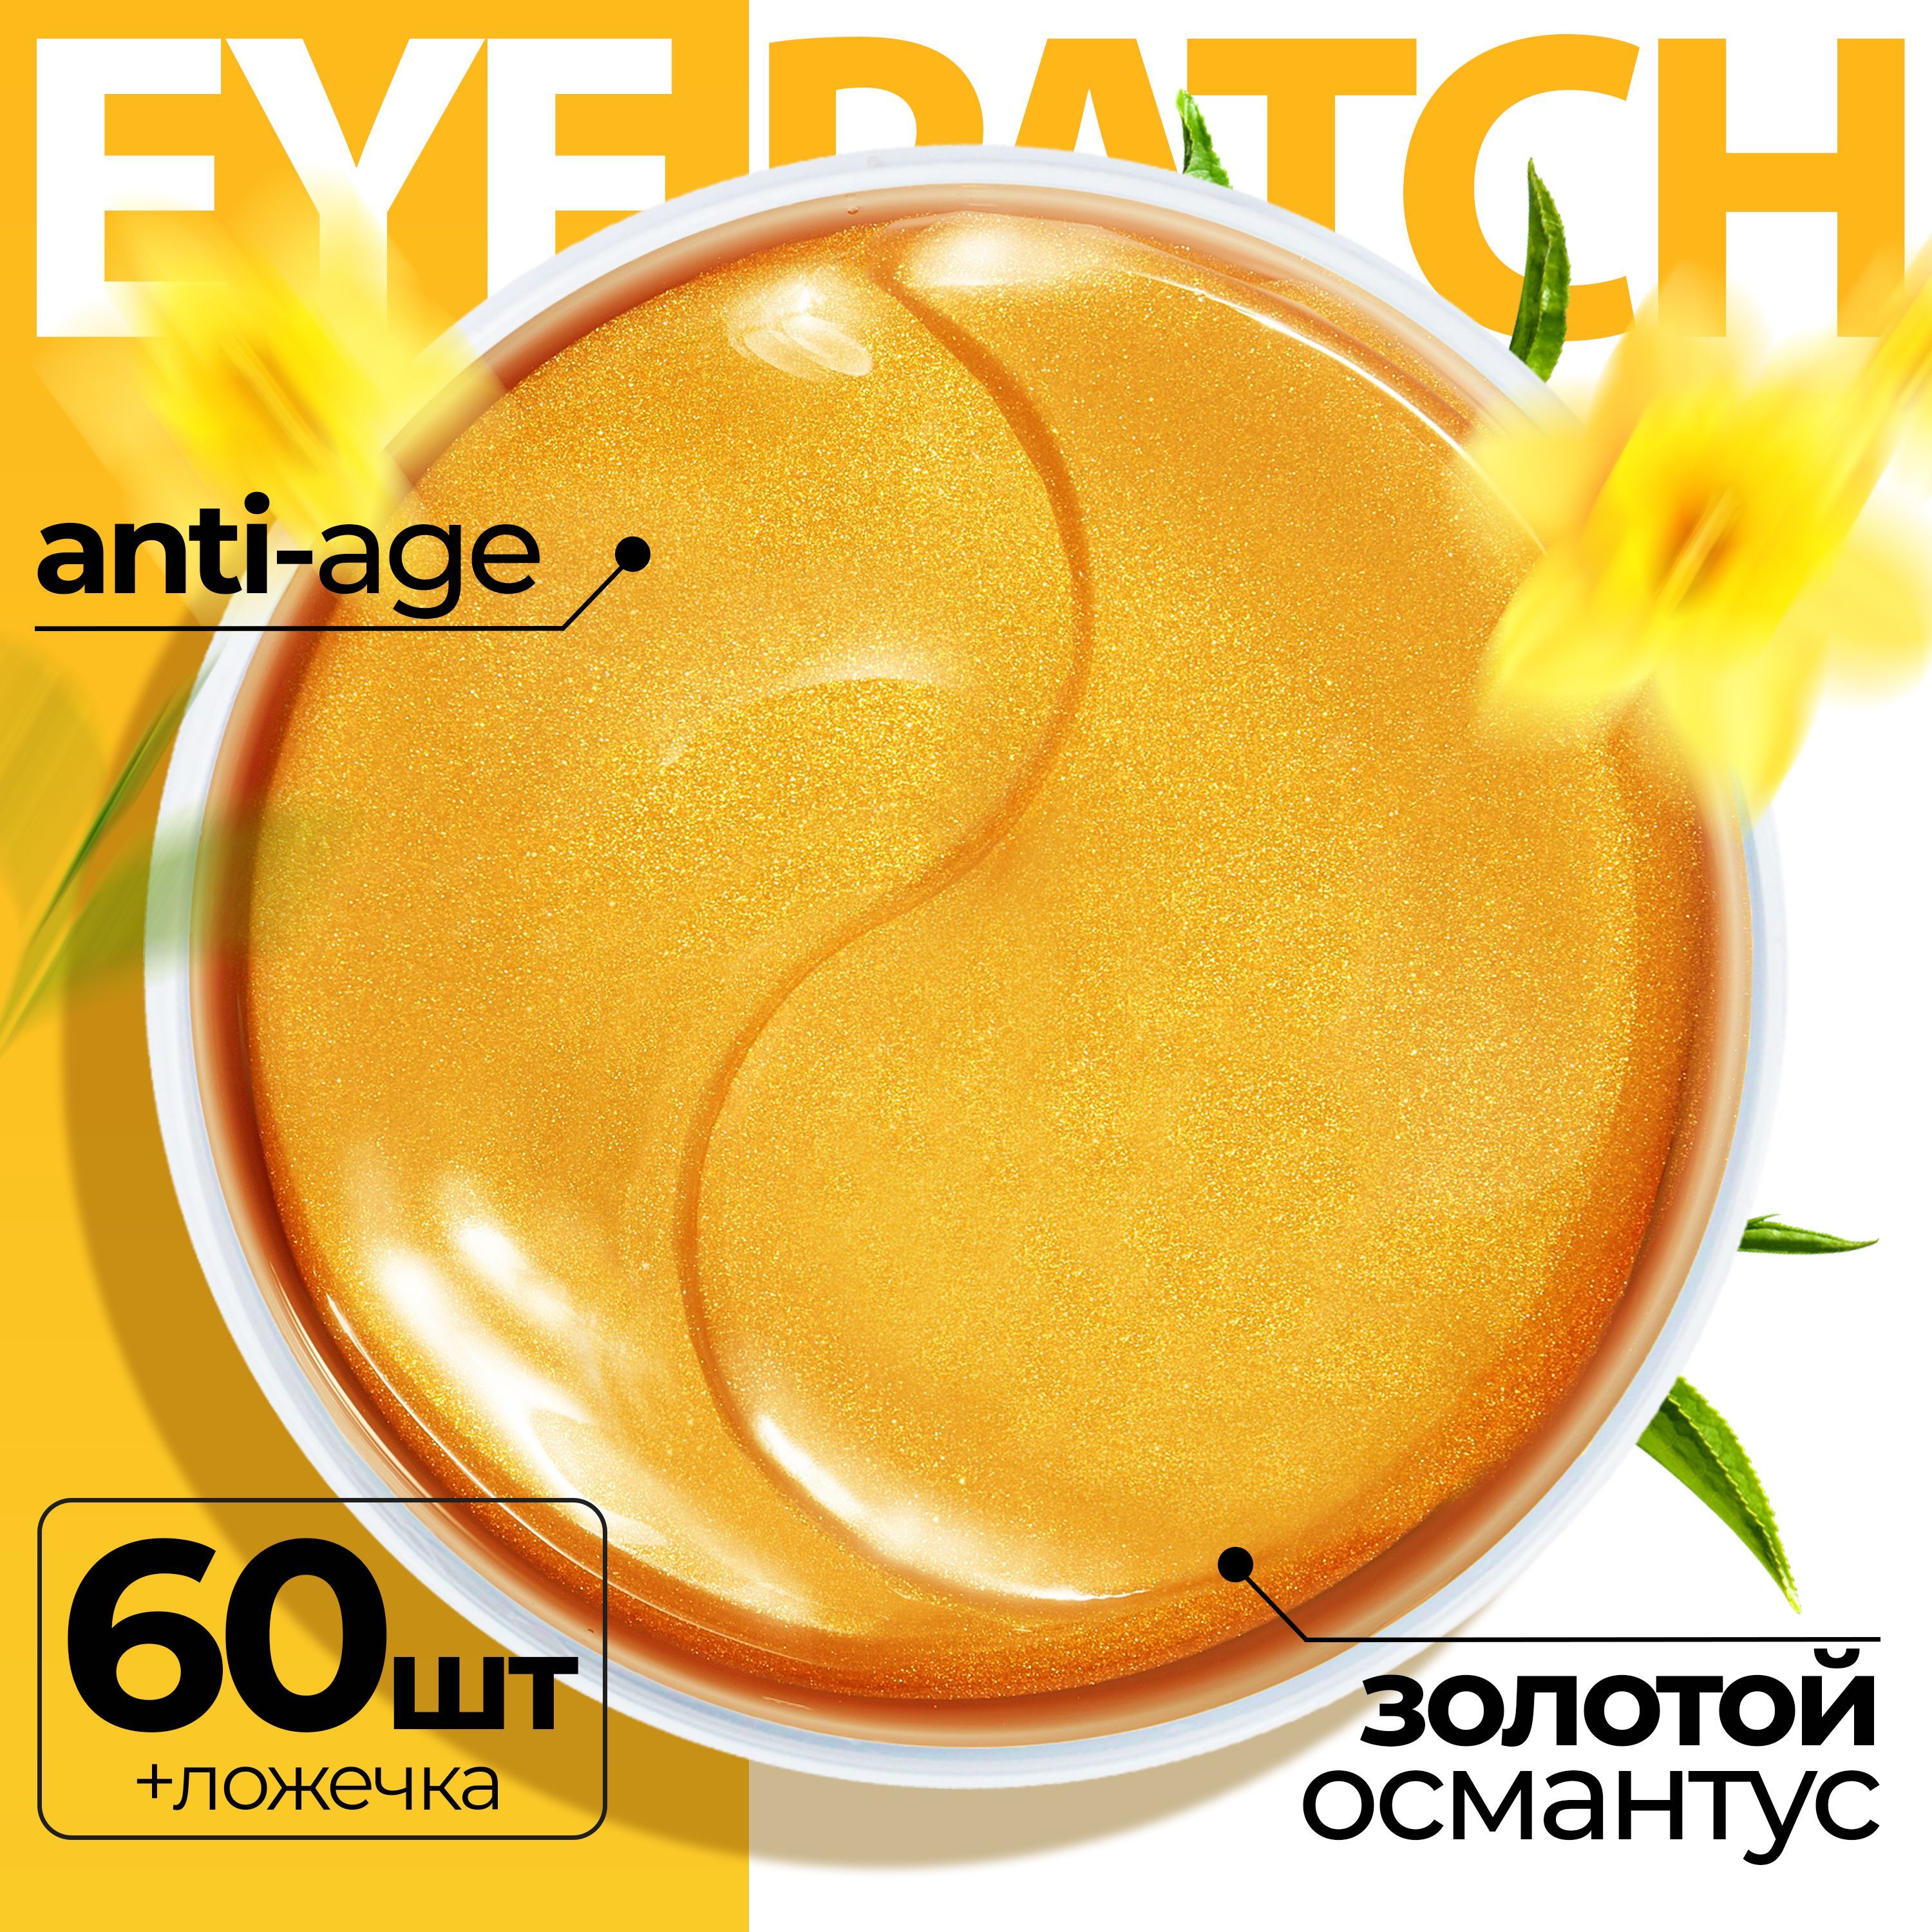 Патчи Fabrik cosmetology для кожи вокруг глаз гидрогелевые с золотым османтусом 60 шт principessa патчи для глаз тканевые с золотым османтусом 40